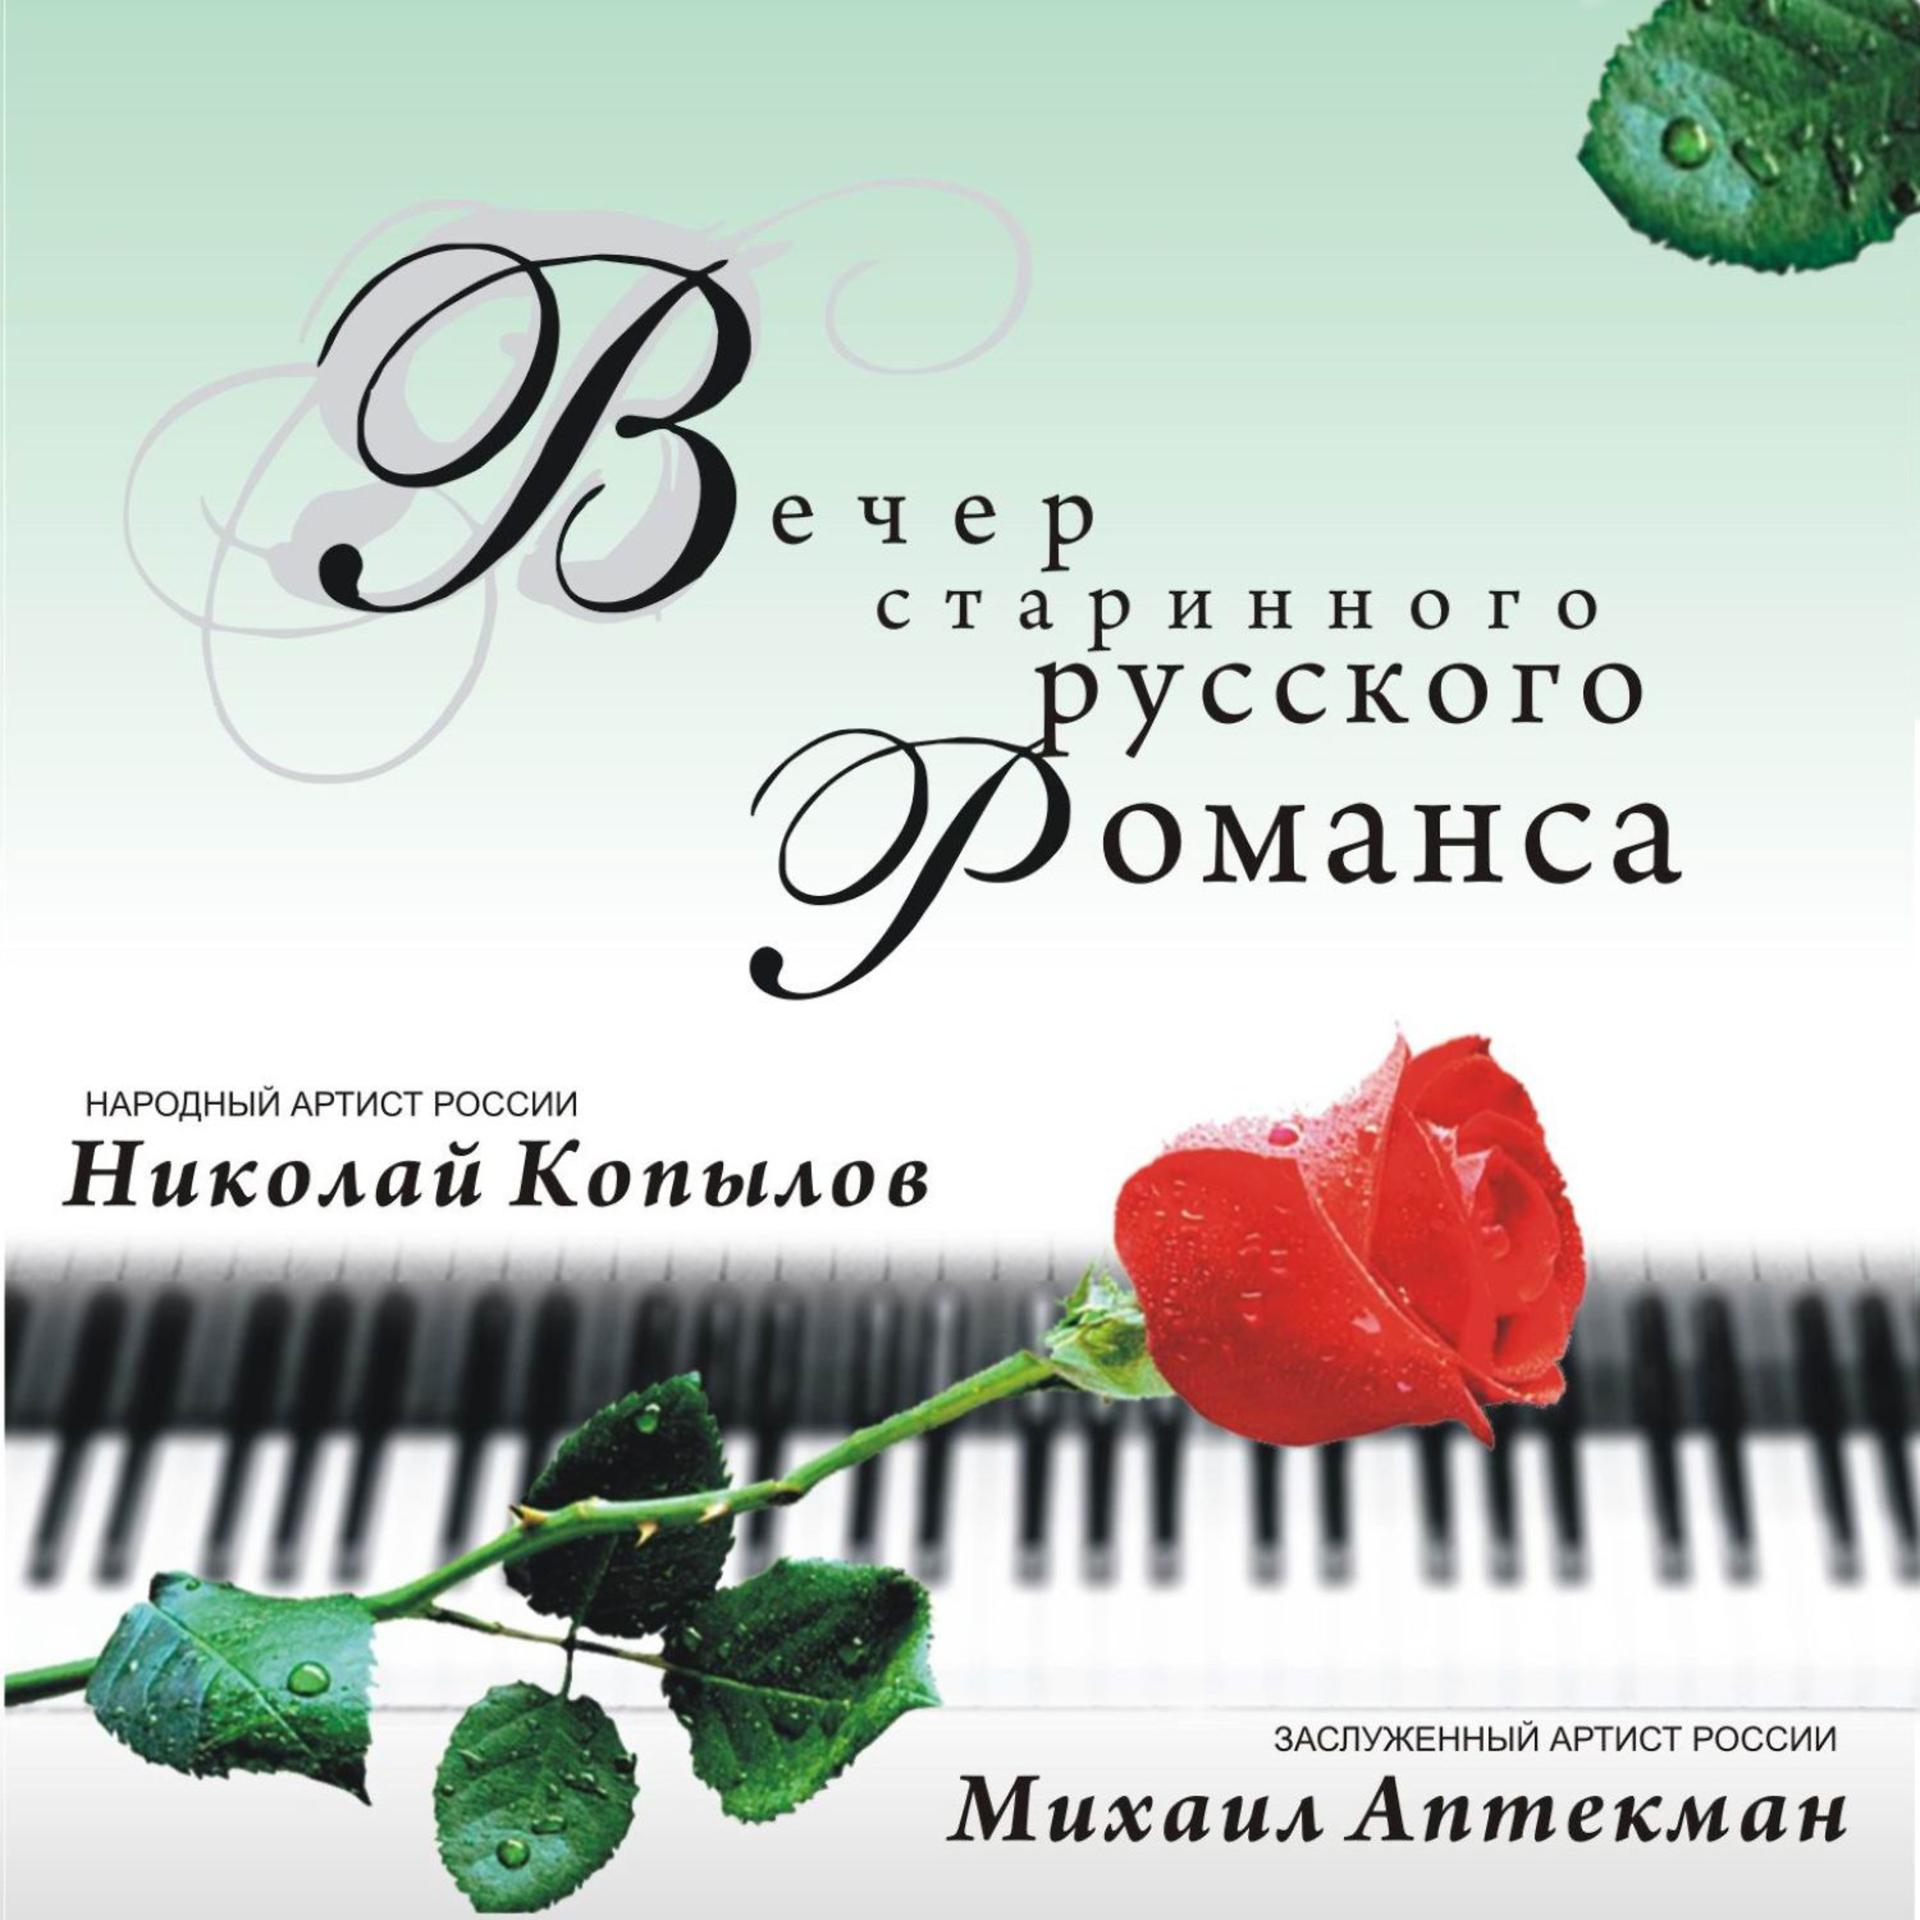 Песня из московского романса